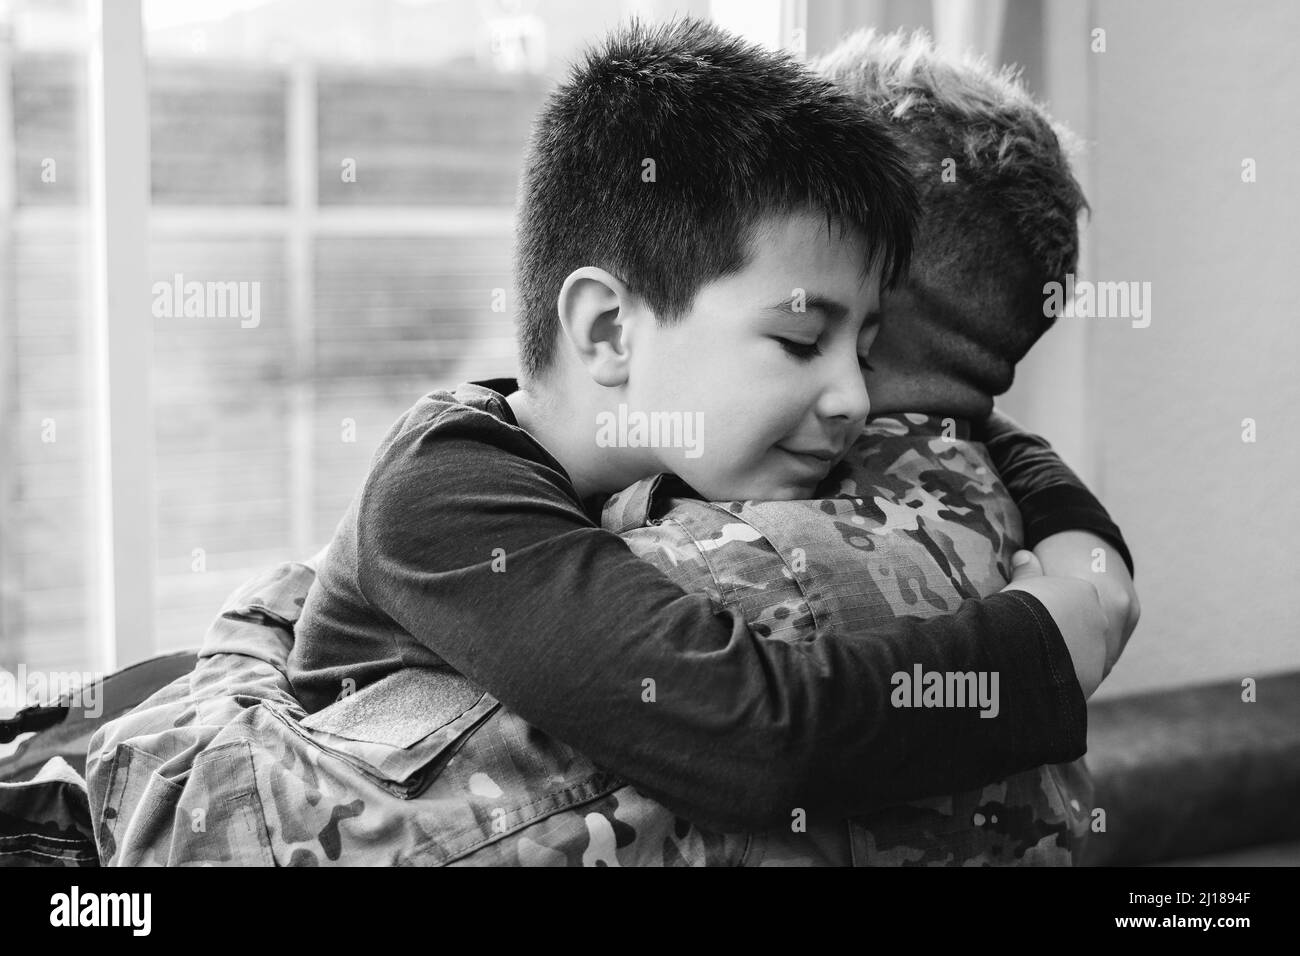 Père vétéran embrassant son fils enfant après une réunion de retour - famille amour et concept de guerre - Focus sur le visage de l'enfant - édition noir et blanc Banque D'Images